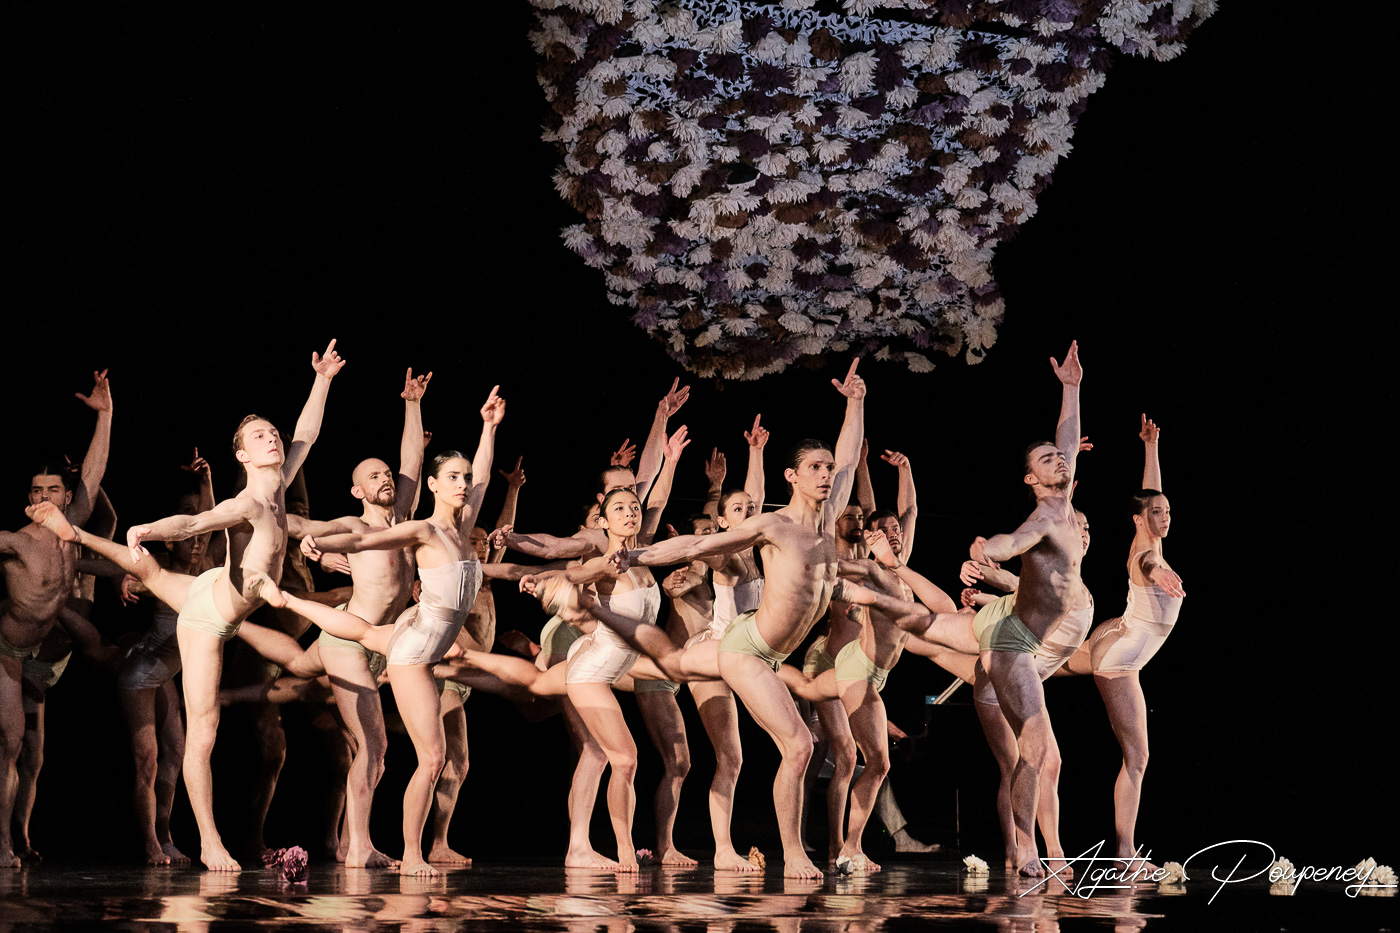 Yours, Virginia - Gil Harush - Ballet de l'OnR © Agathe Poupeney 